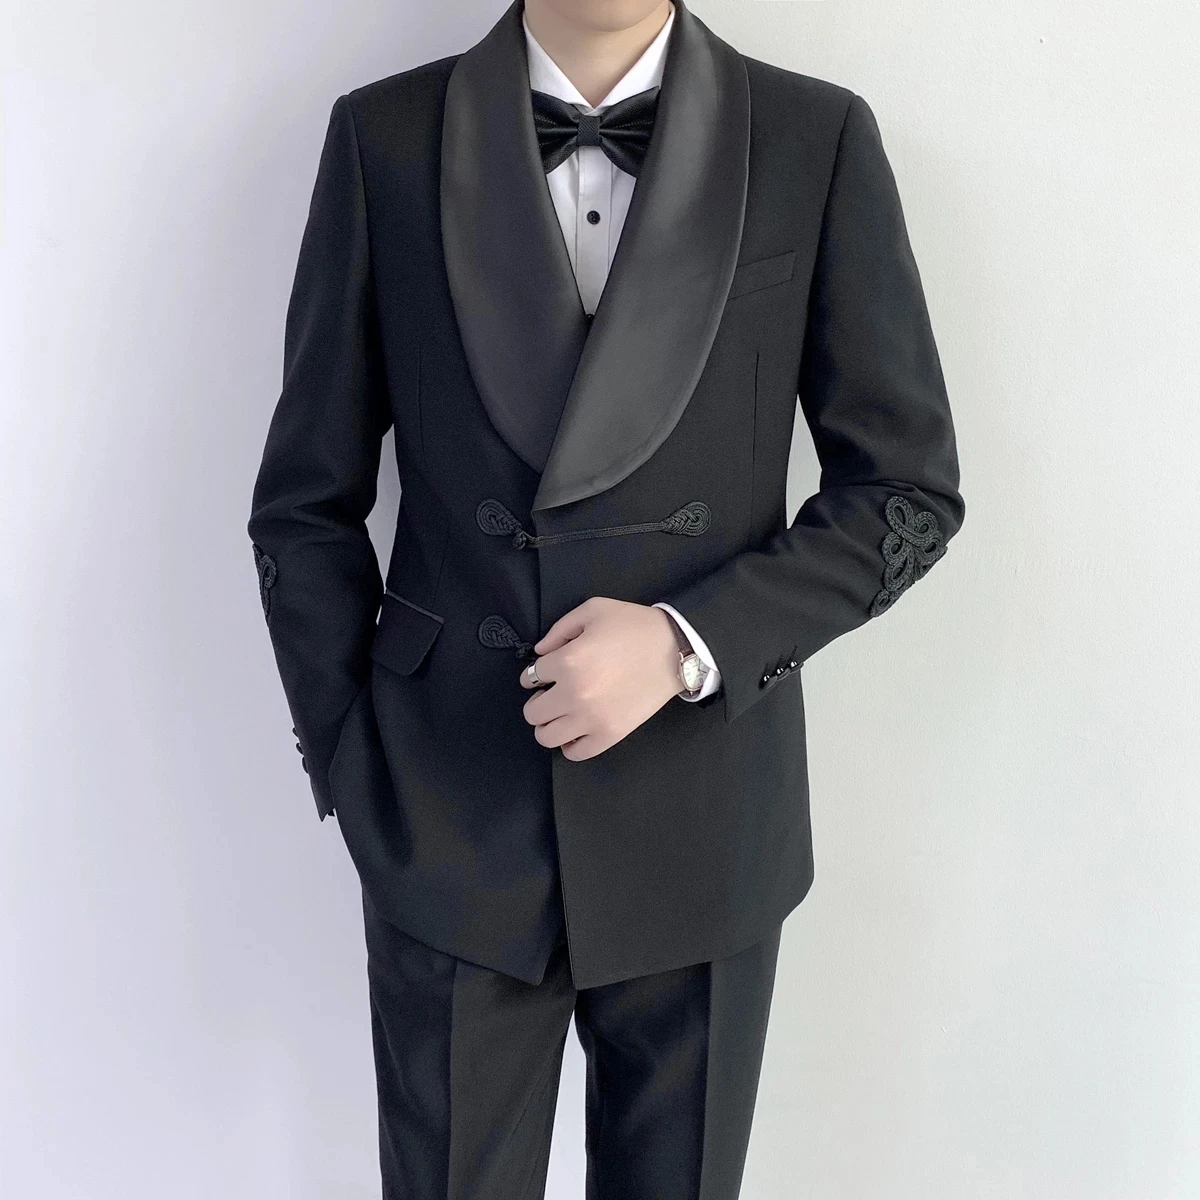 Specialiai pasiūtas juodas dvigubas jaunikis vyriškas kostiumas su skara atlapu ir kiniškomis sagomis oficialioms vestuvėms (švarkas + kelnės) Nuotrauka 1